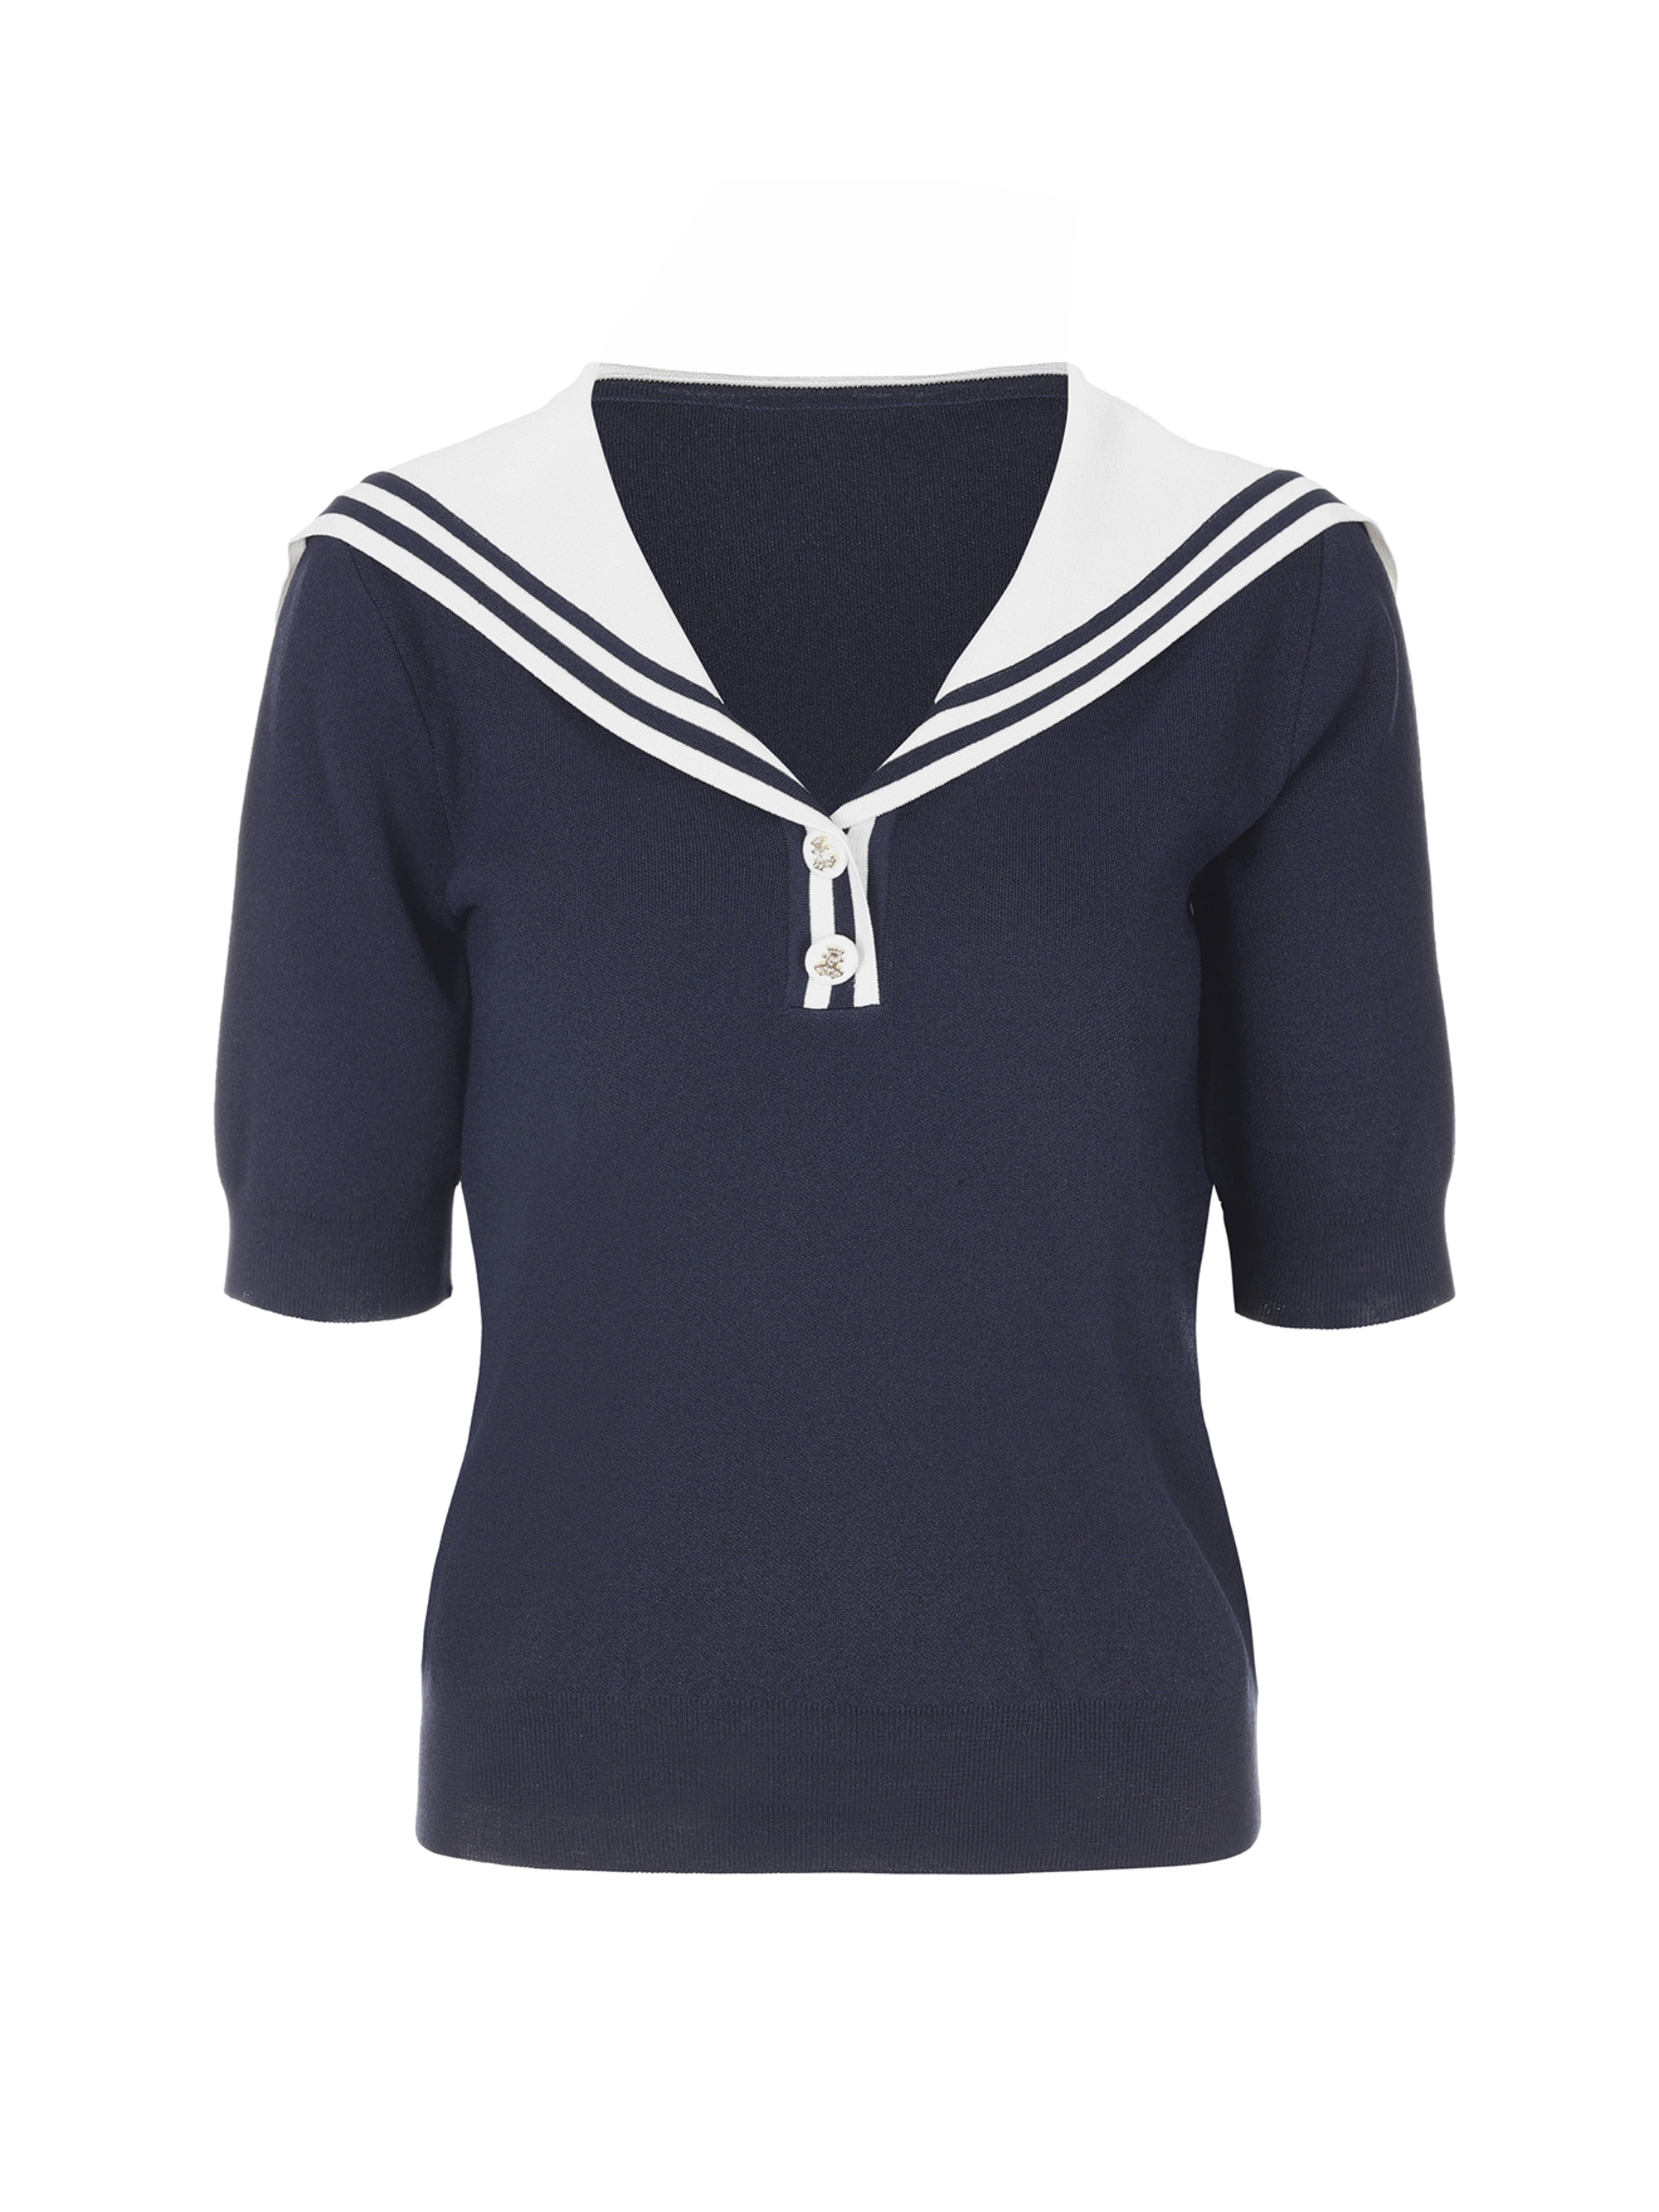 Sailor Collar Knit Top